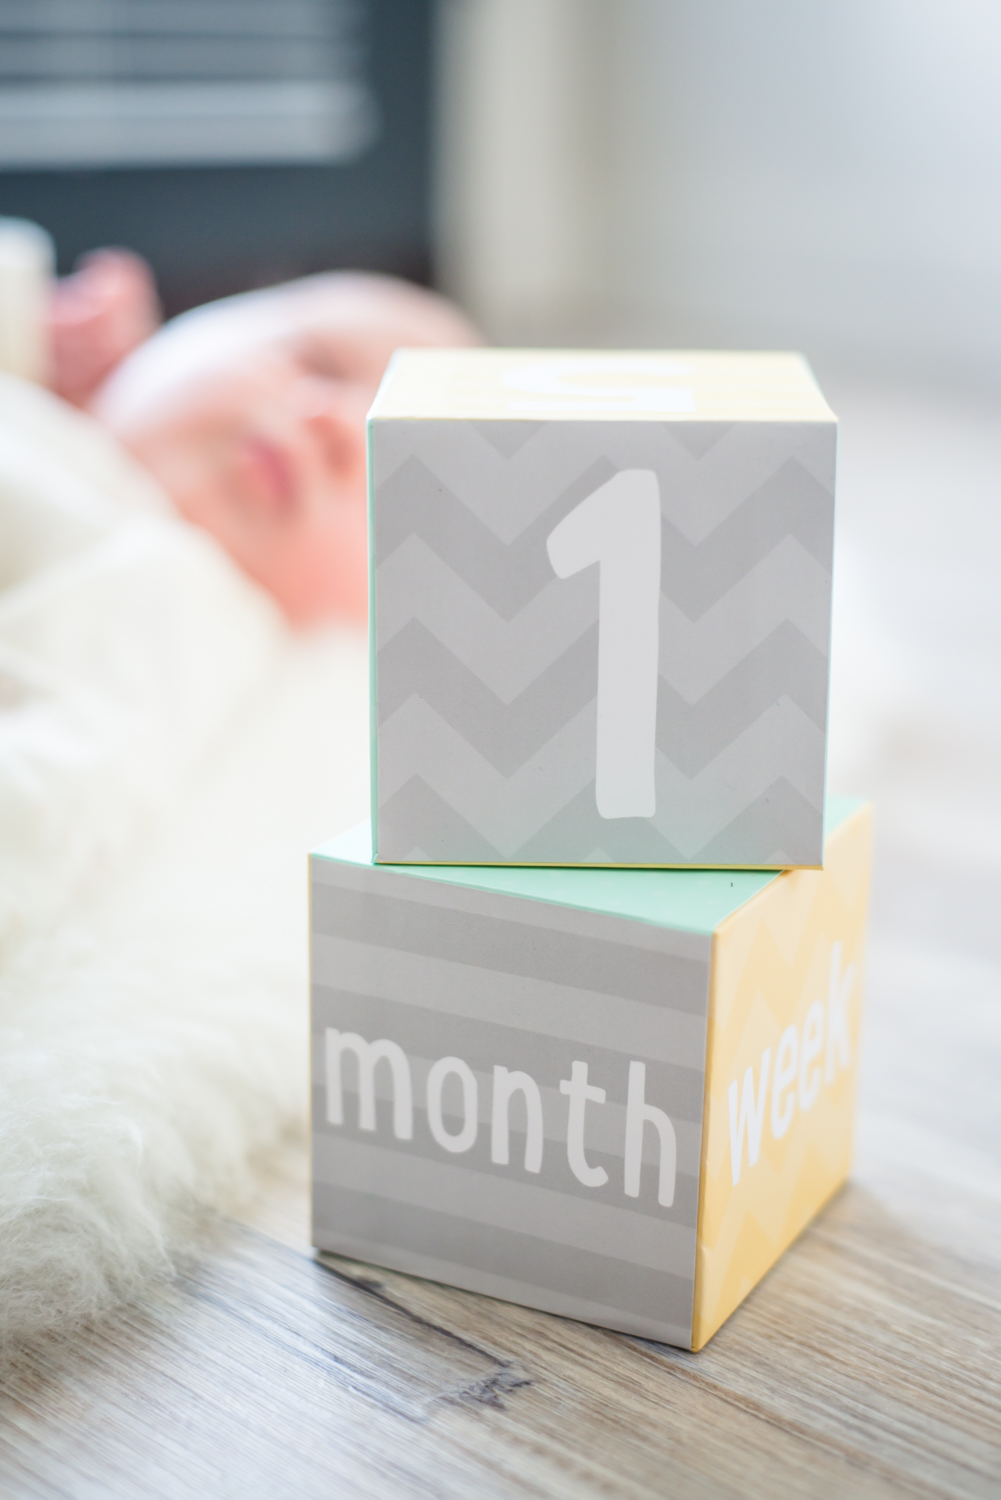 Jack Everett is 1 Month Old - Newborn Update